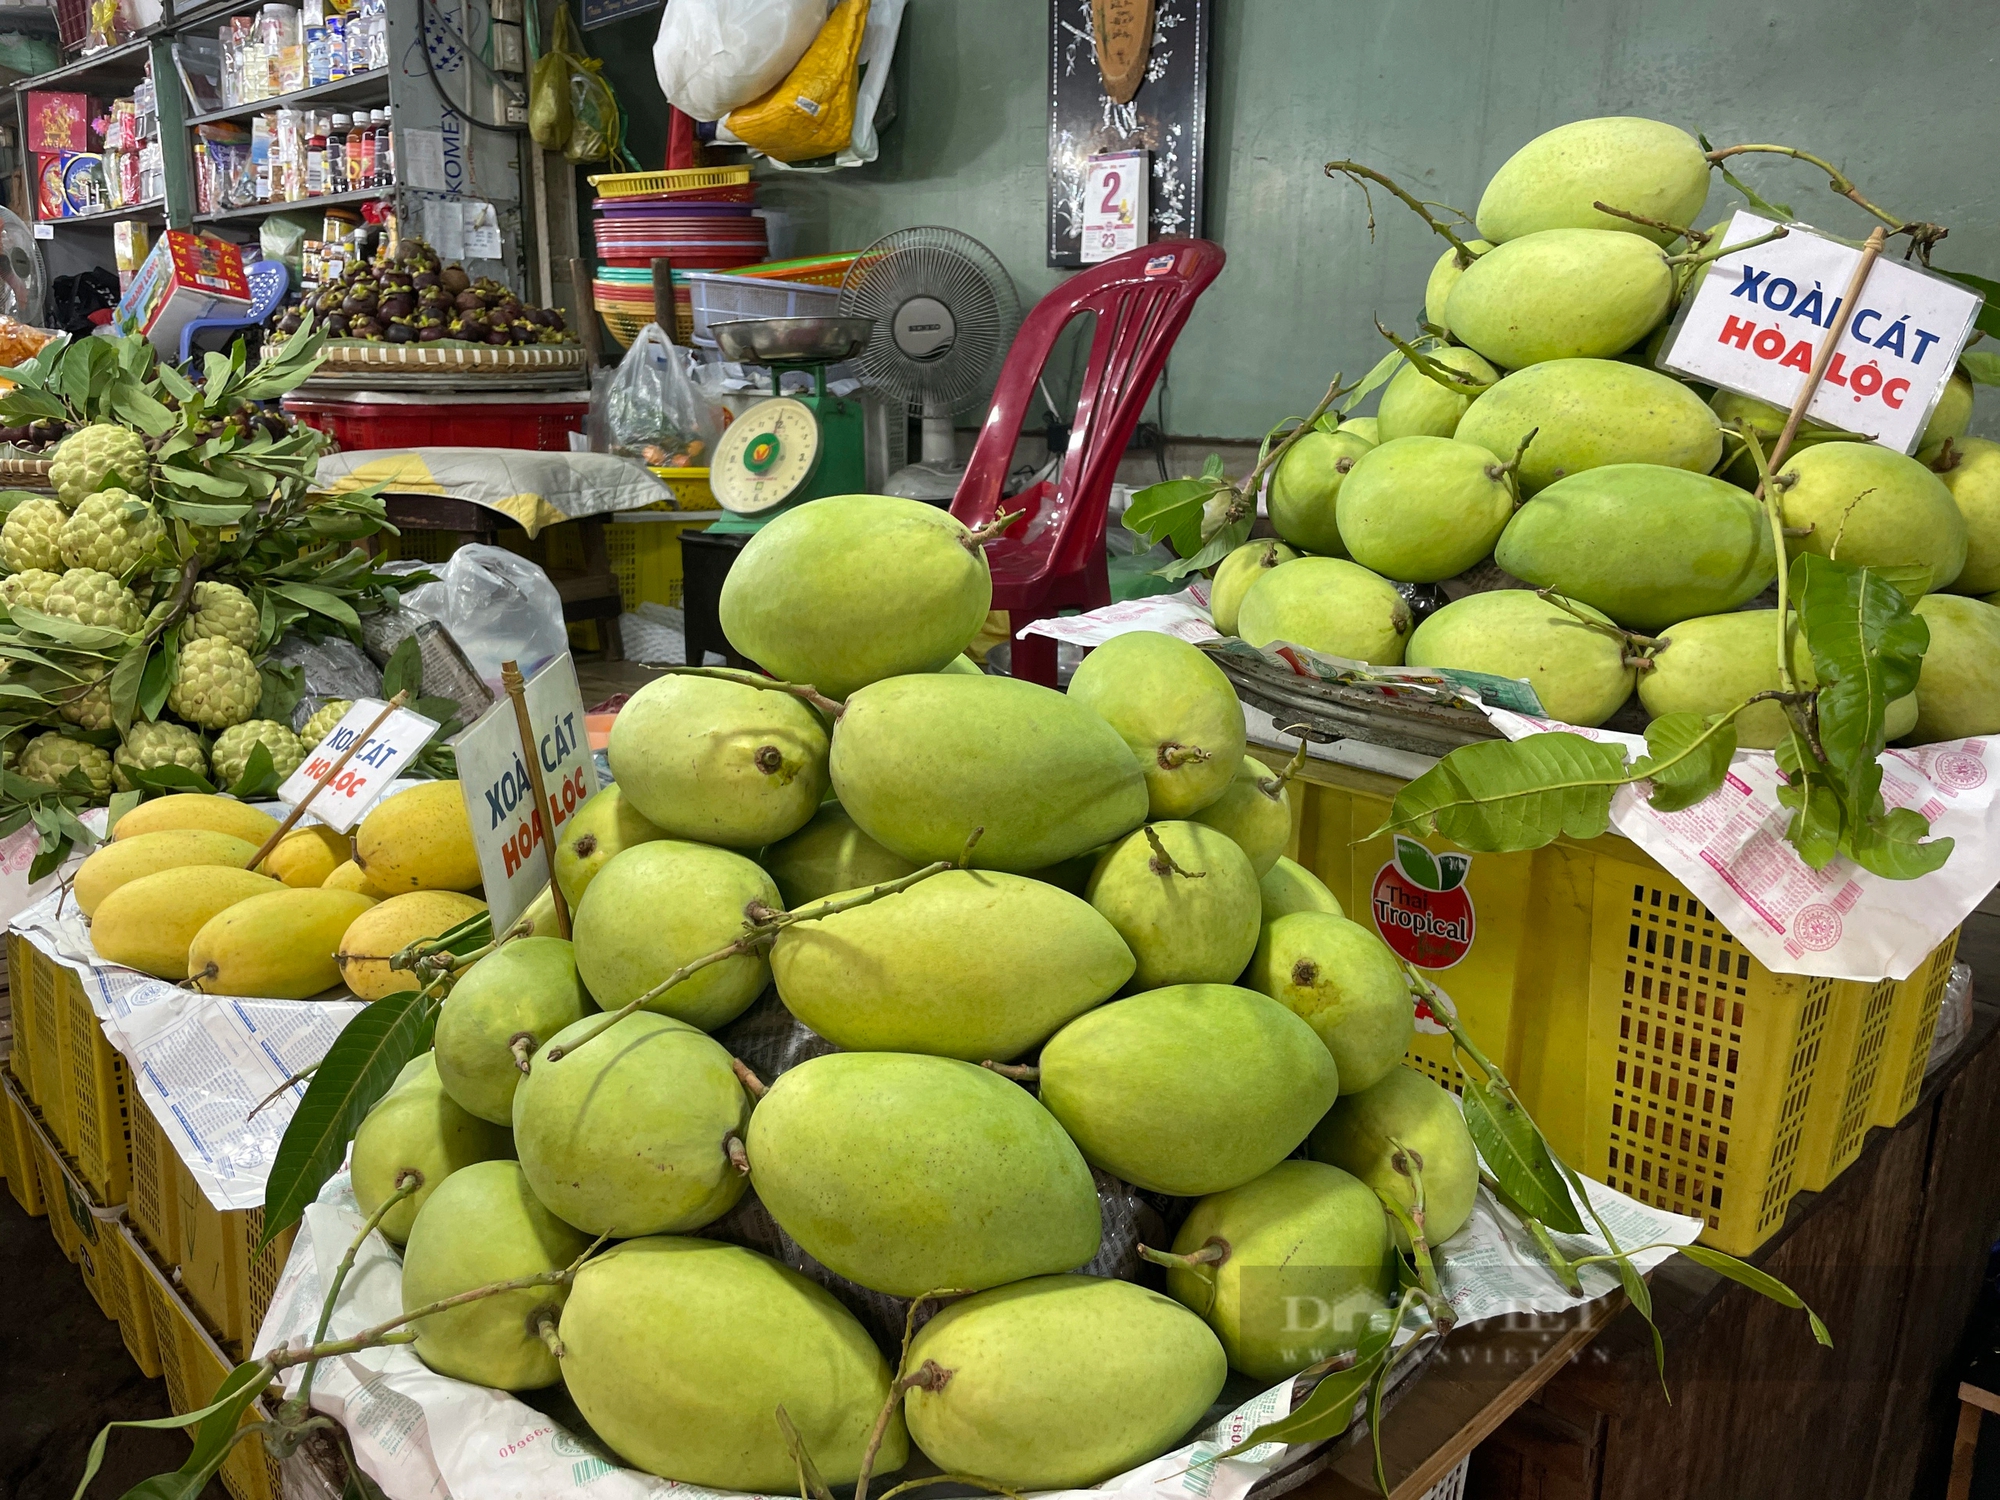 Loại trái cây được mệnh danh “vua của các loại trái cây” đang đổ về TP.HCM với giá bất ngờ- Ảnh 3.